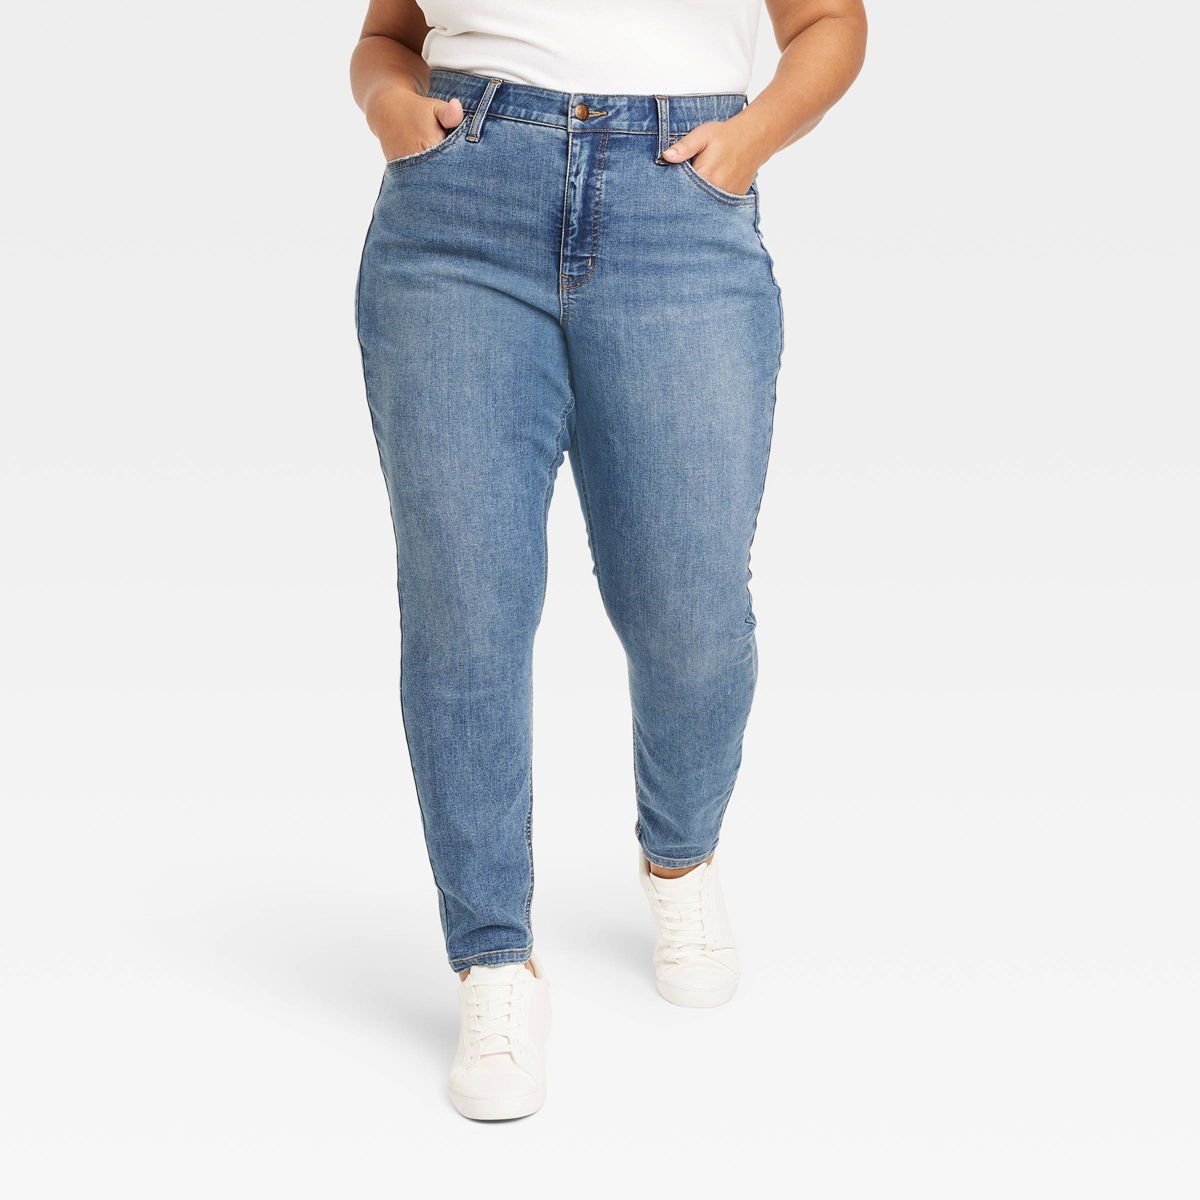 Women's High-Rise Skinny Jeans - Ava & Viv™ | Target